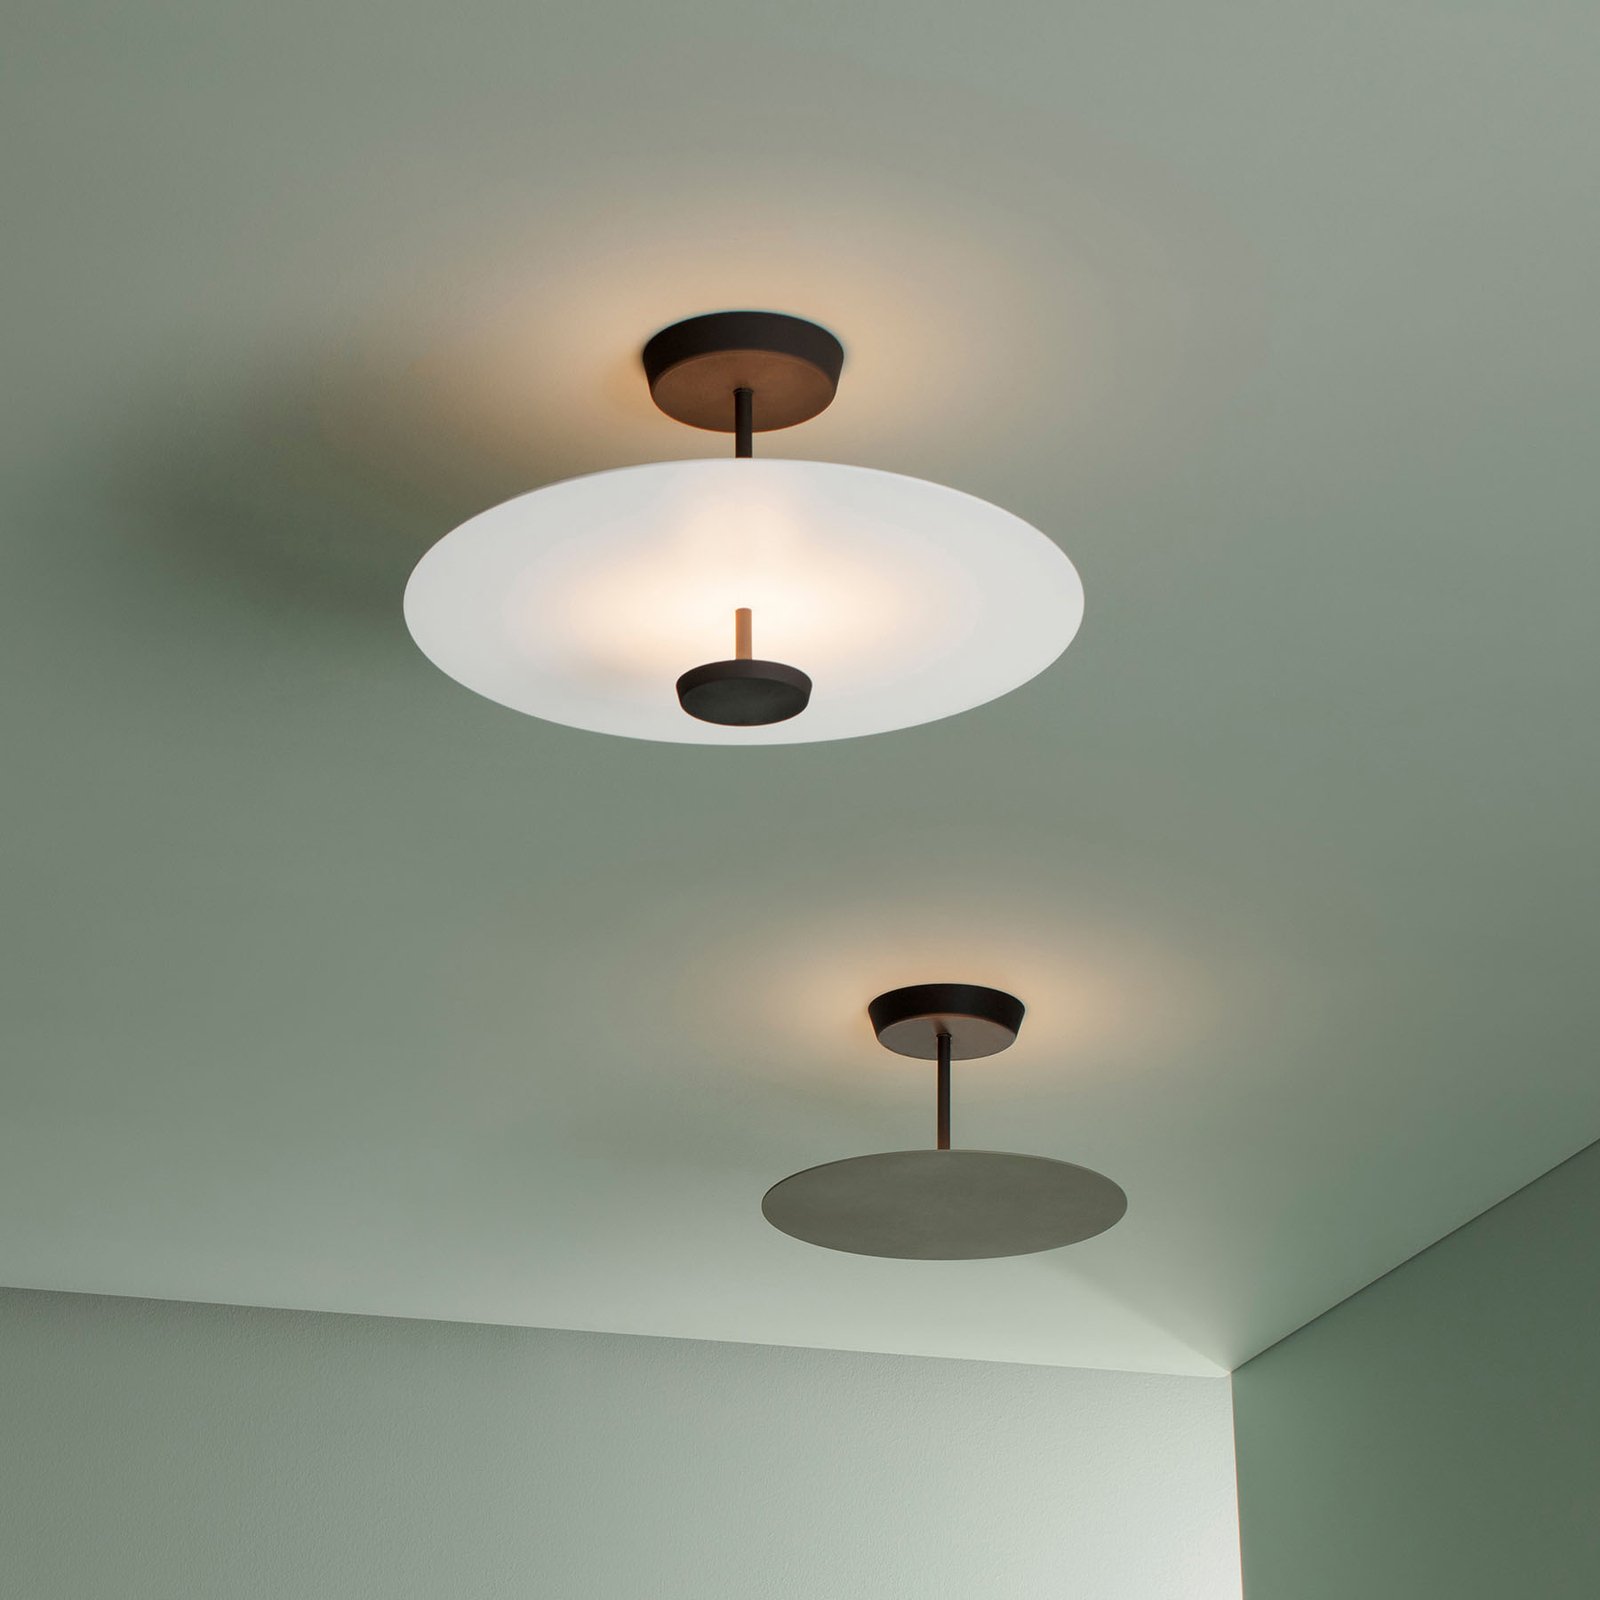 Vegen Pence minimum Vibia Flat LED plafondlamp 2-lamps wit DALI dim | Lampen24.be